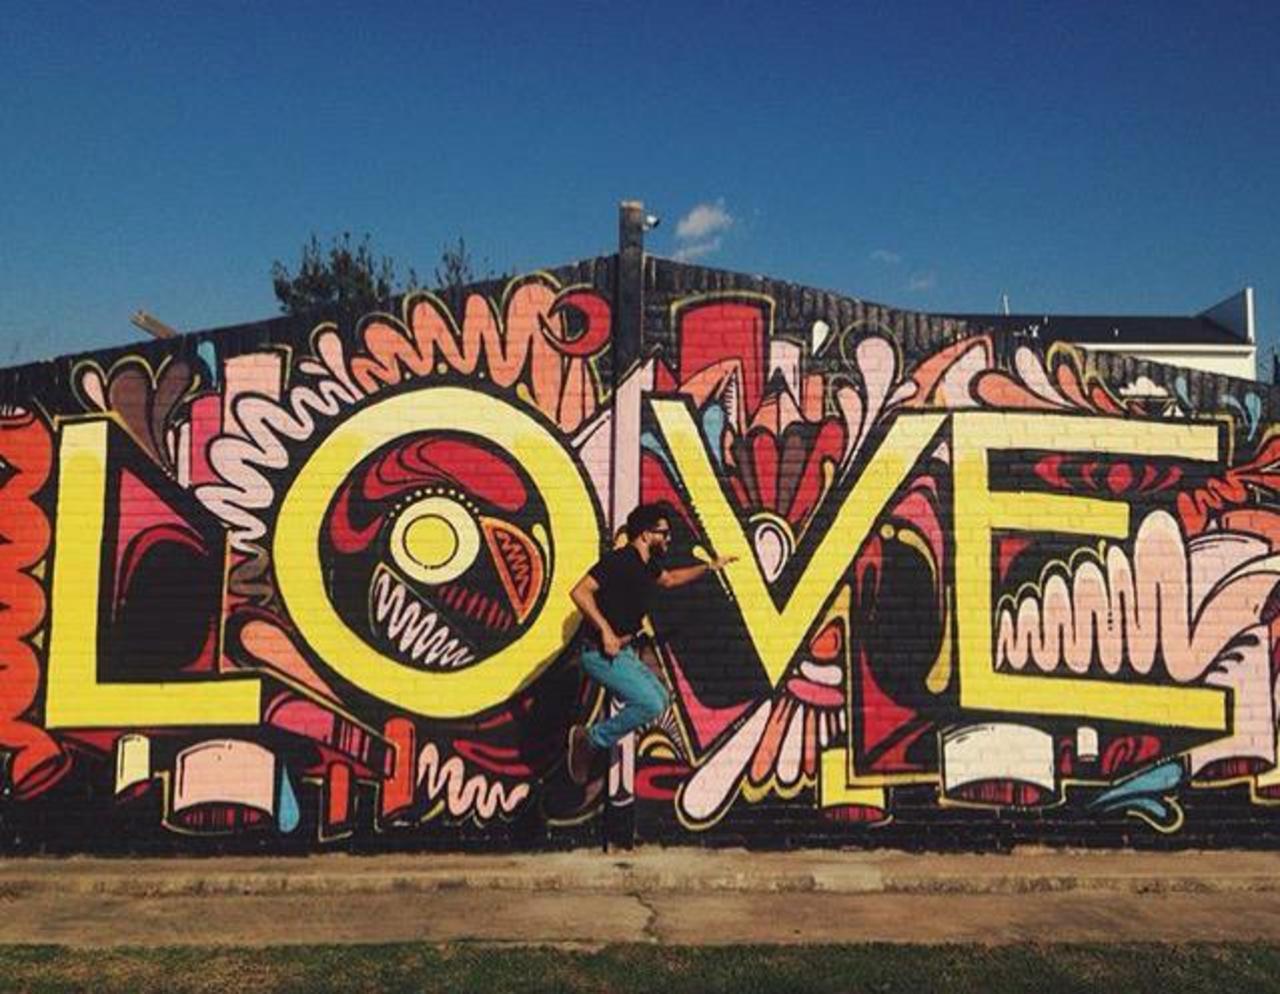 RT GoogleStreetArt: Love ❤️
Street Art by WileyArt

#art #graffiti #mural #streetart http://t.co/TjnlJrfbQe https://goo.gl/t4fpx2